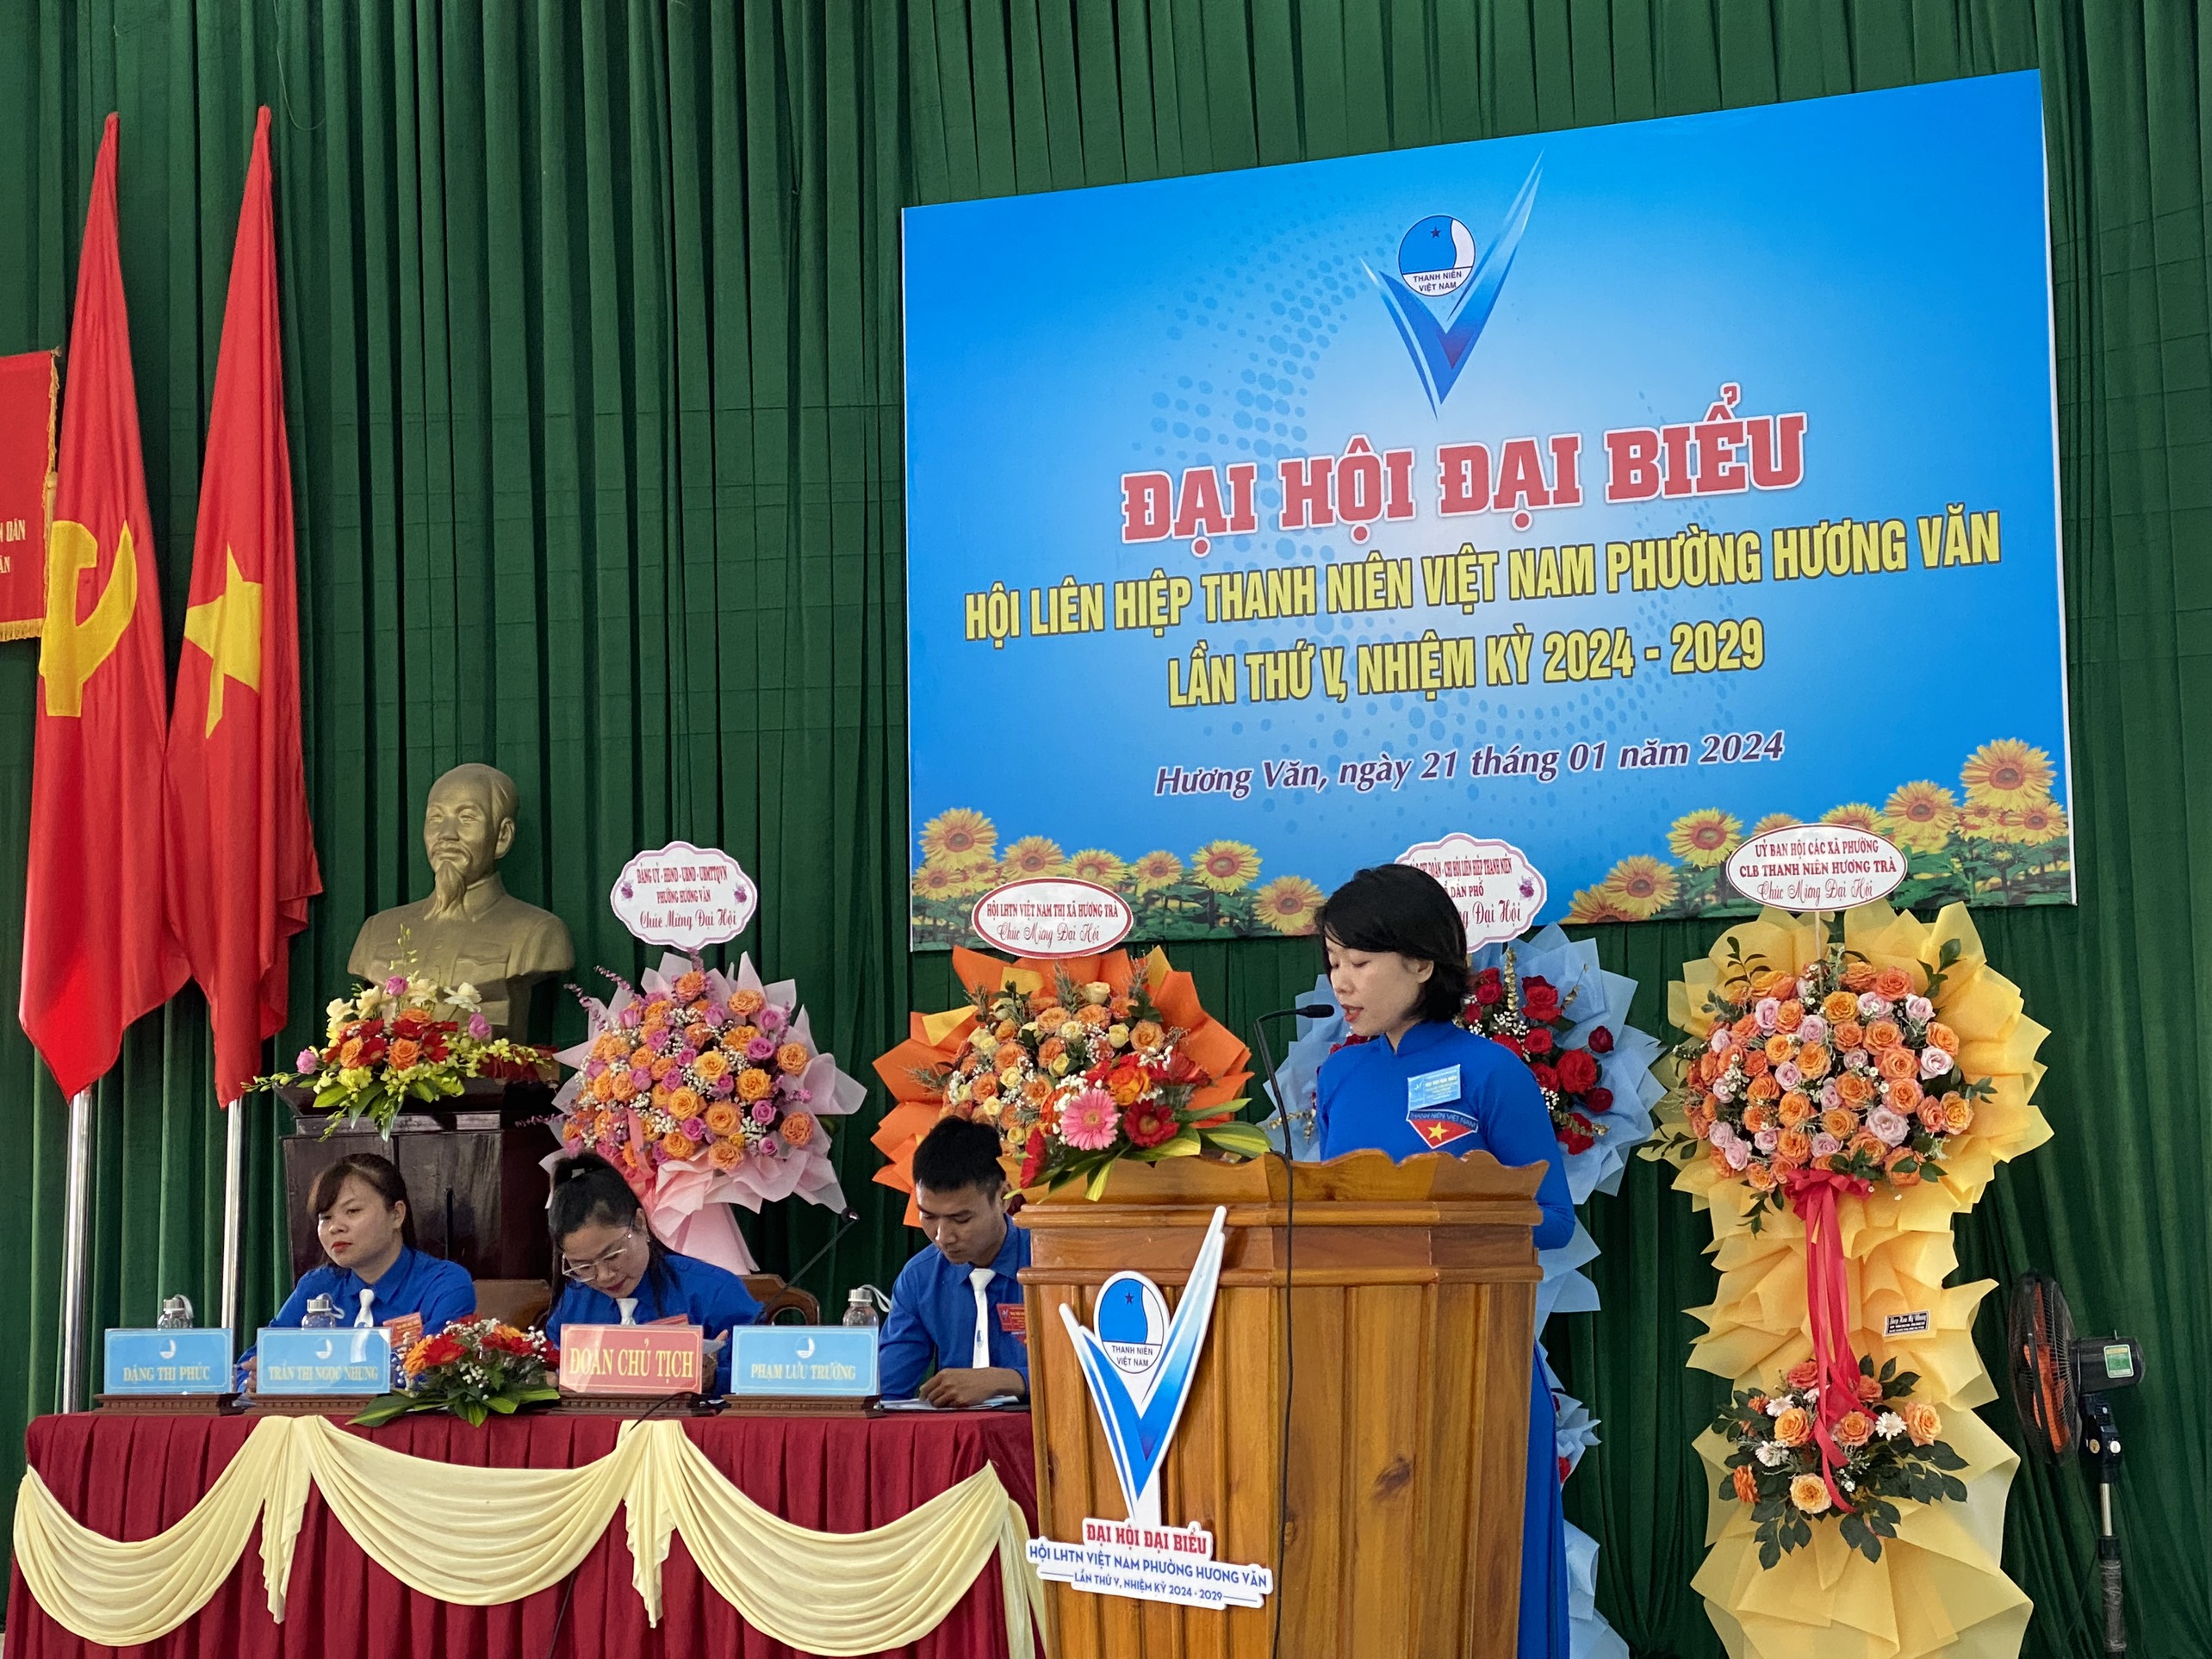 Đại hội điểm Hội LHTN Việt Nam cấp cơ sở, nhiệm kỳ 2024-2029.